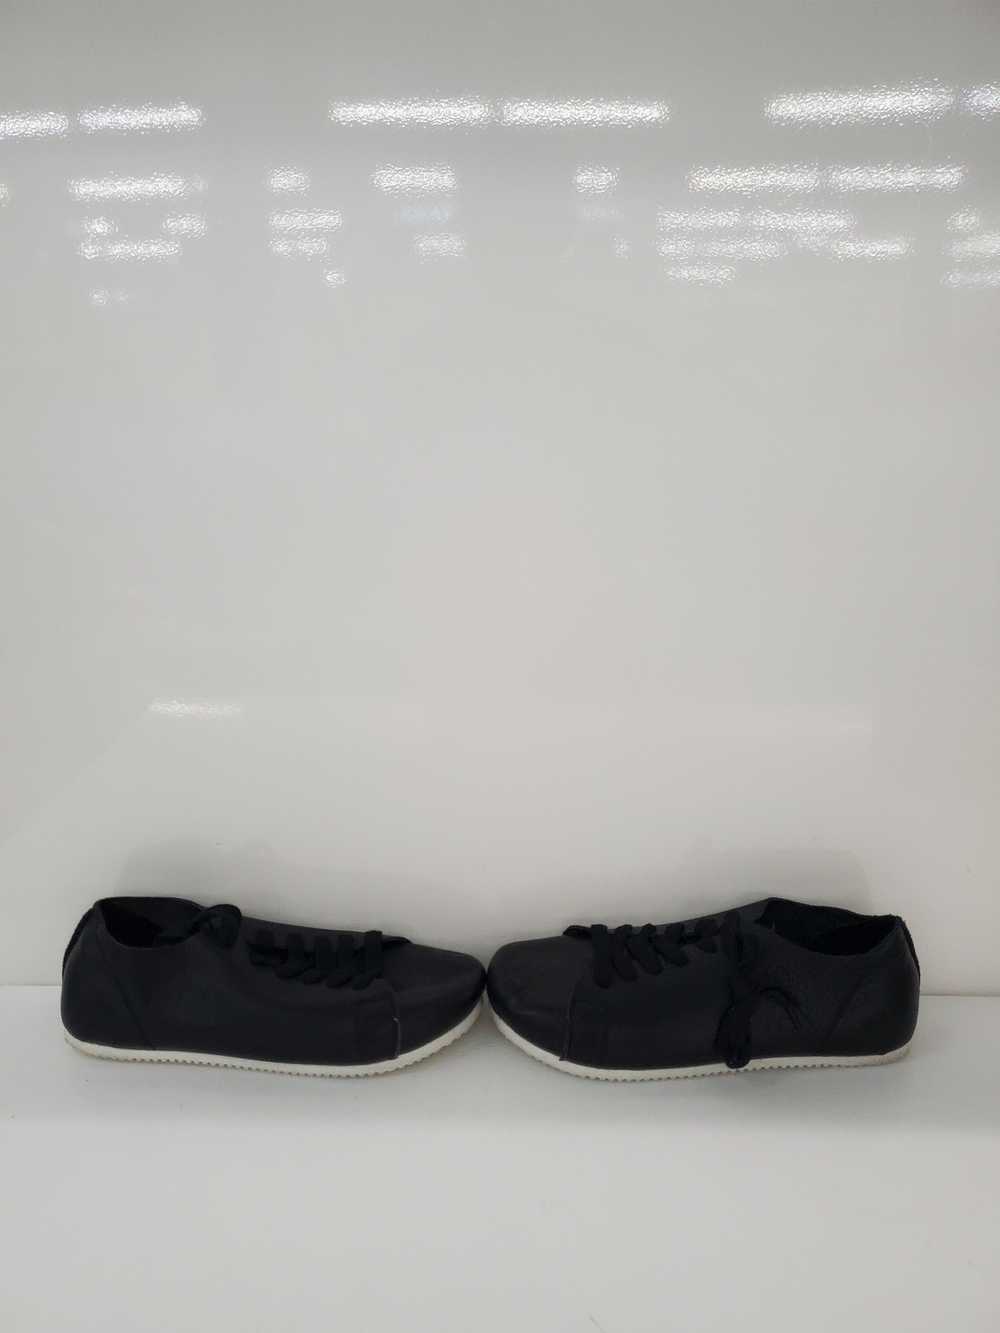 Men otz Shoes Leather Black Shoes Size-10.5 Used - image 3